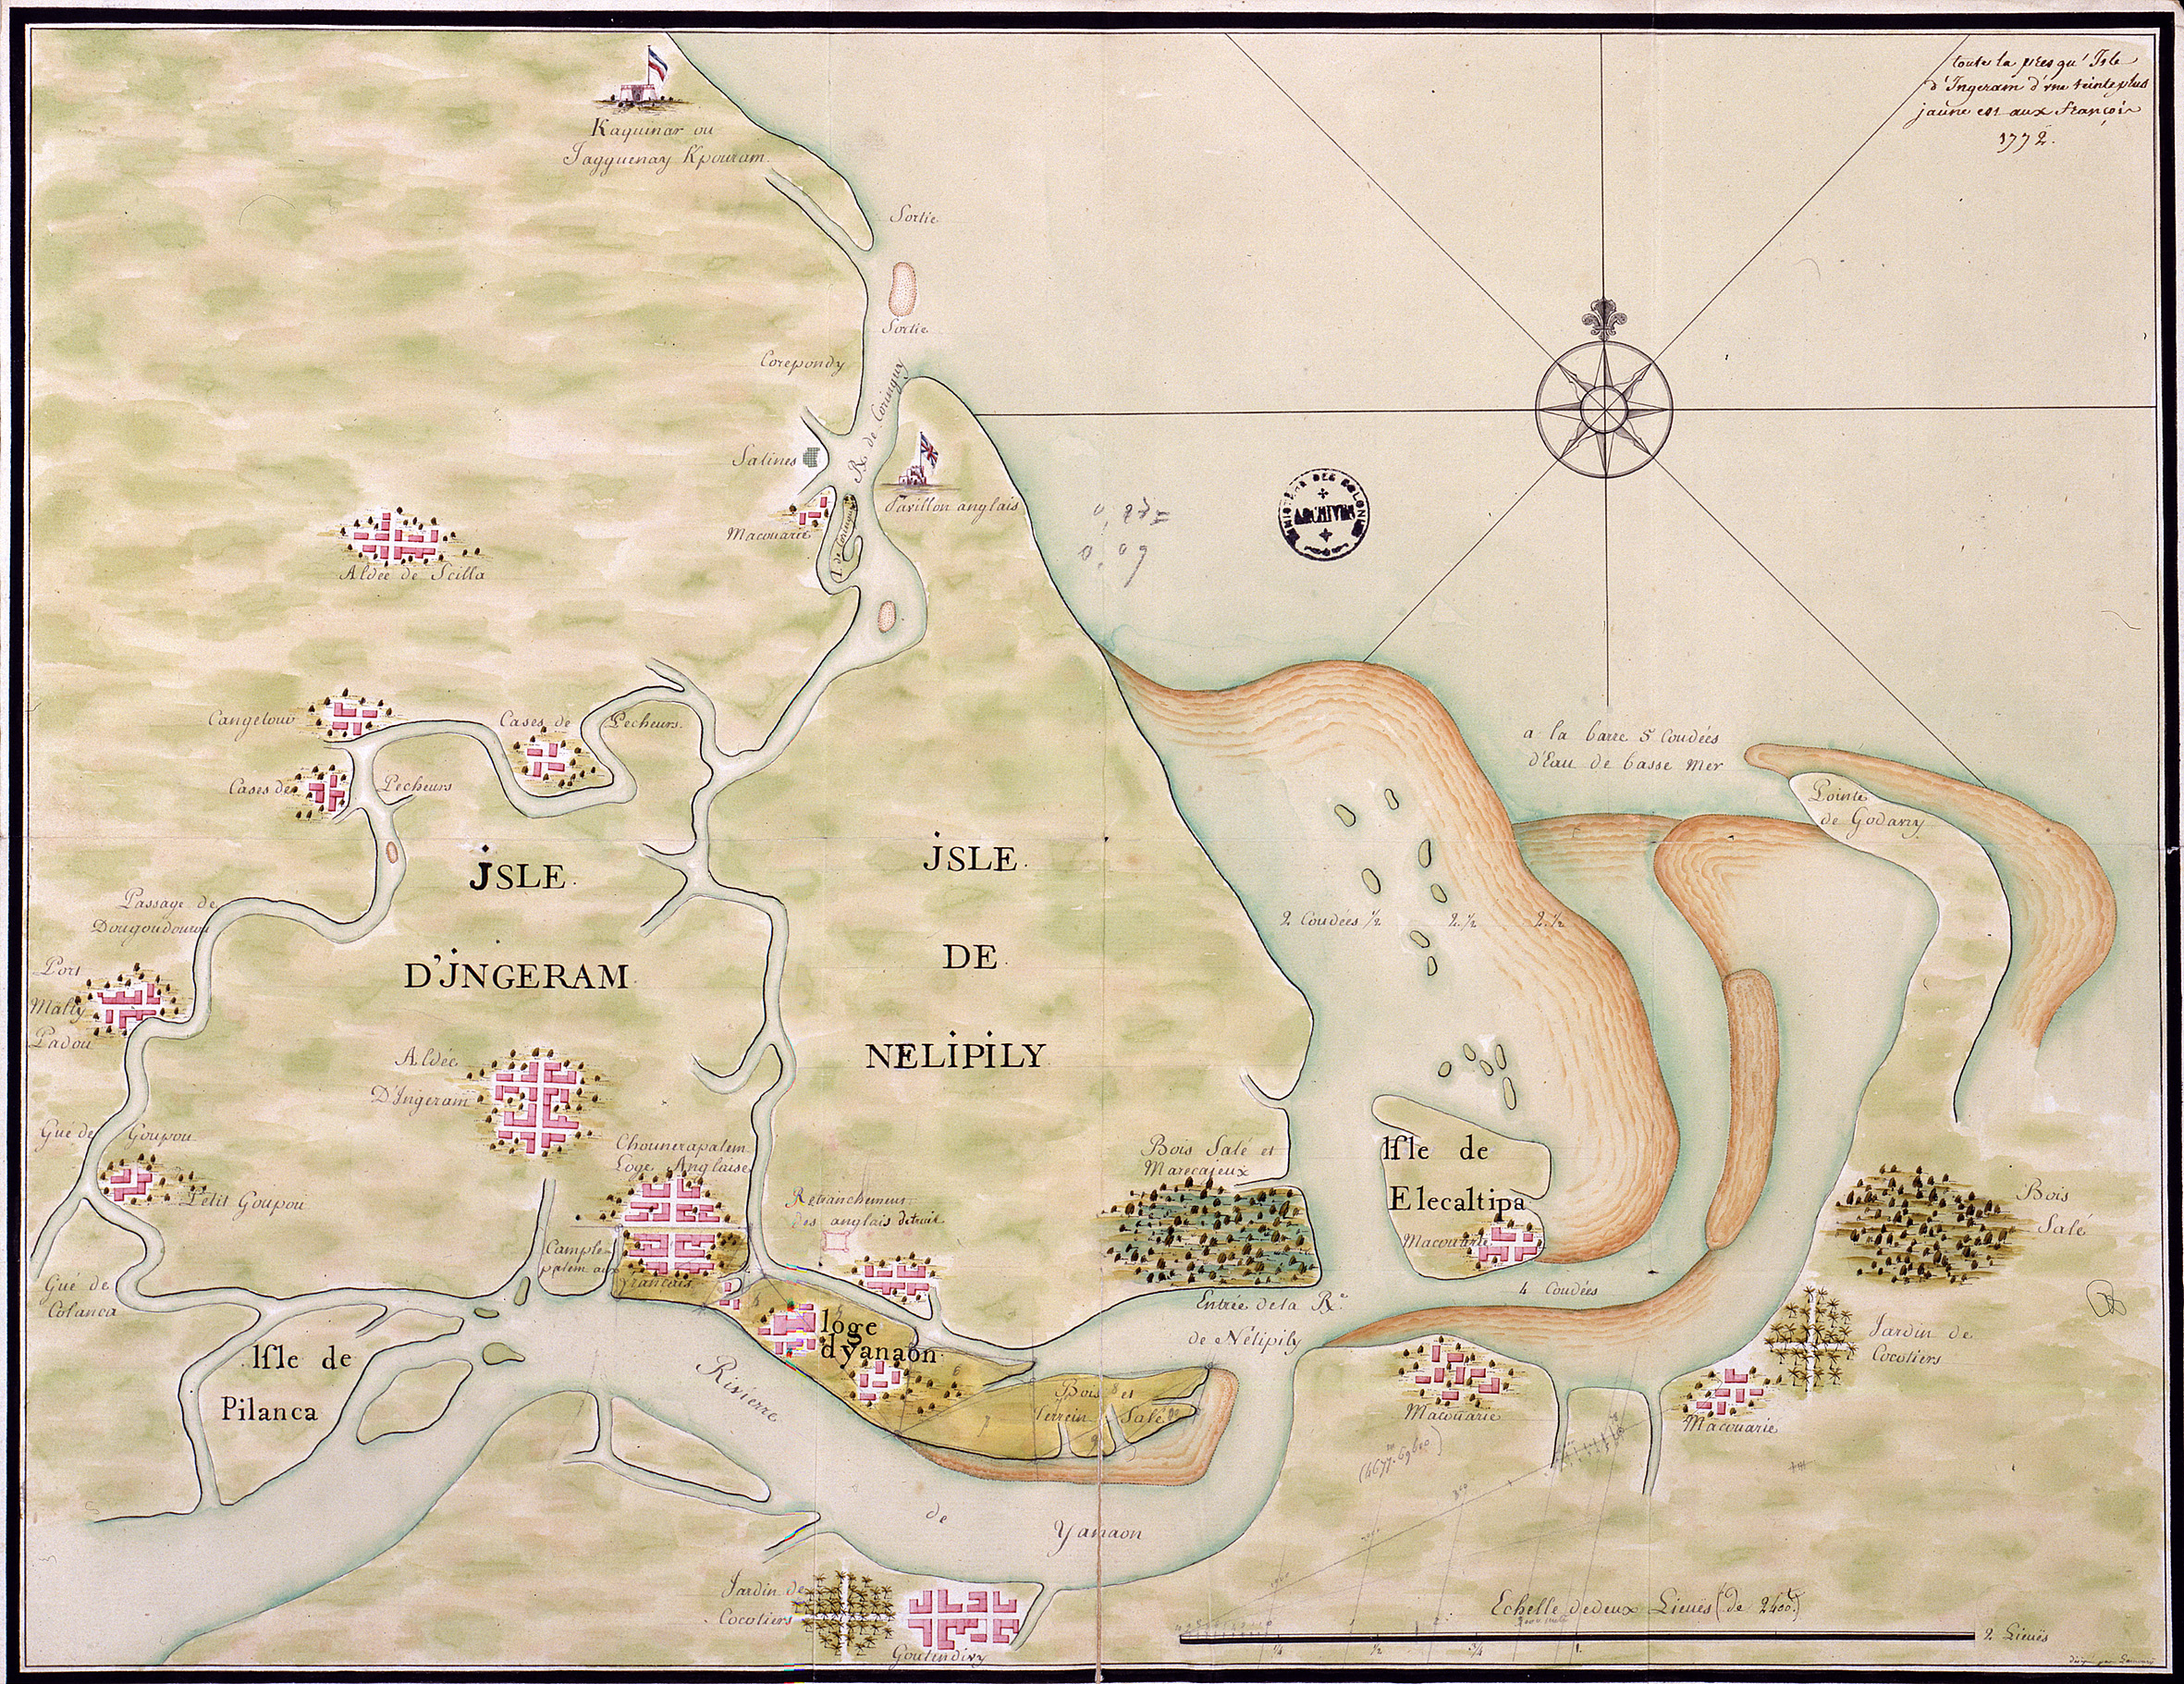 Yanaon et ses environs. Plan de la presqu’île d'Ingeram, 1772 